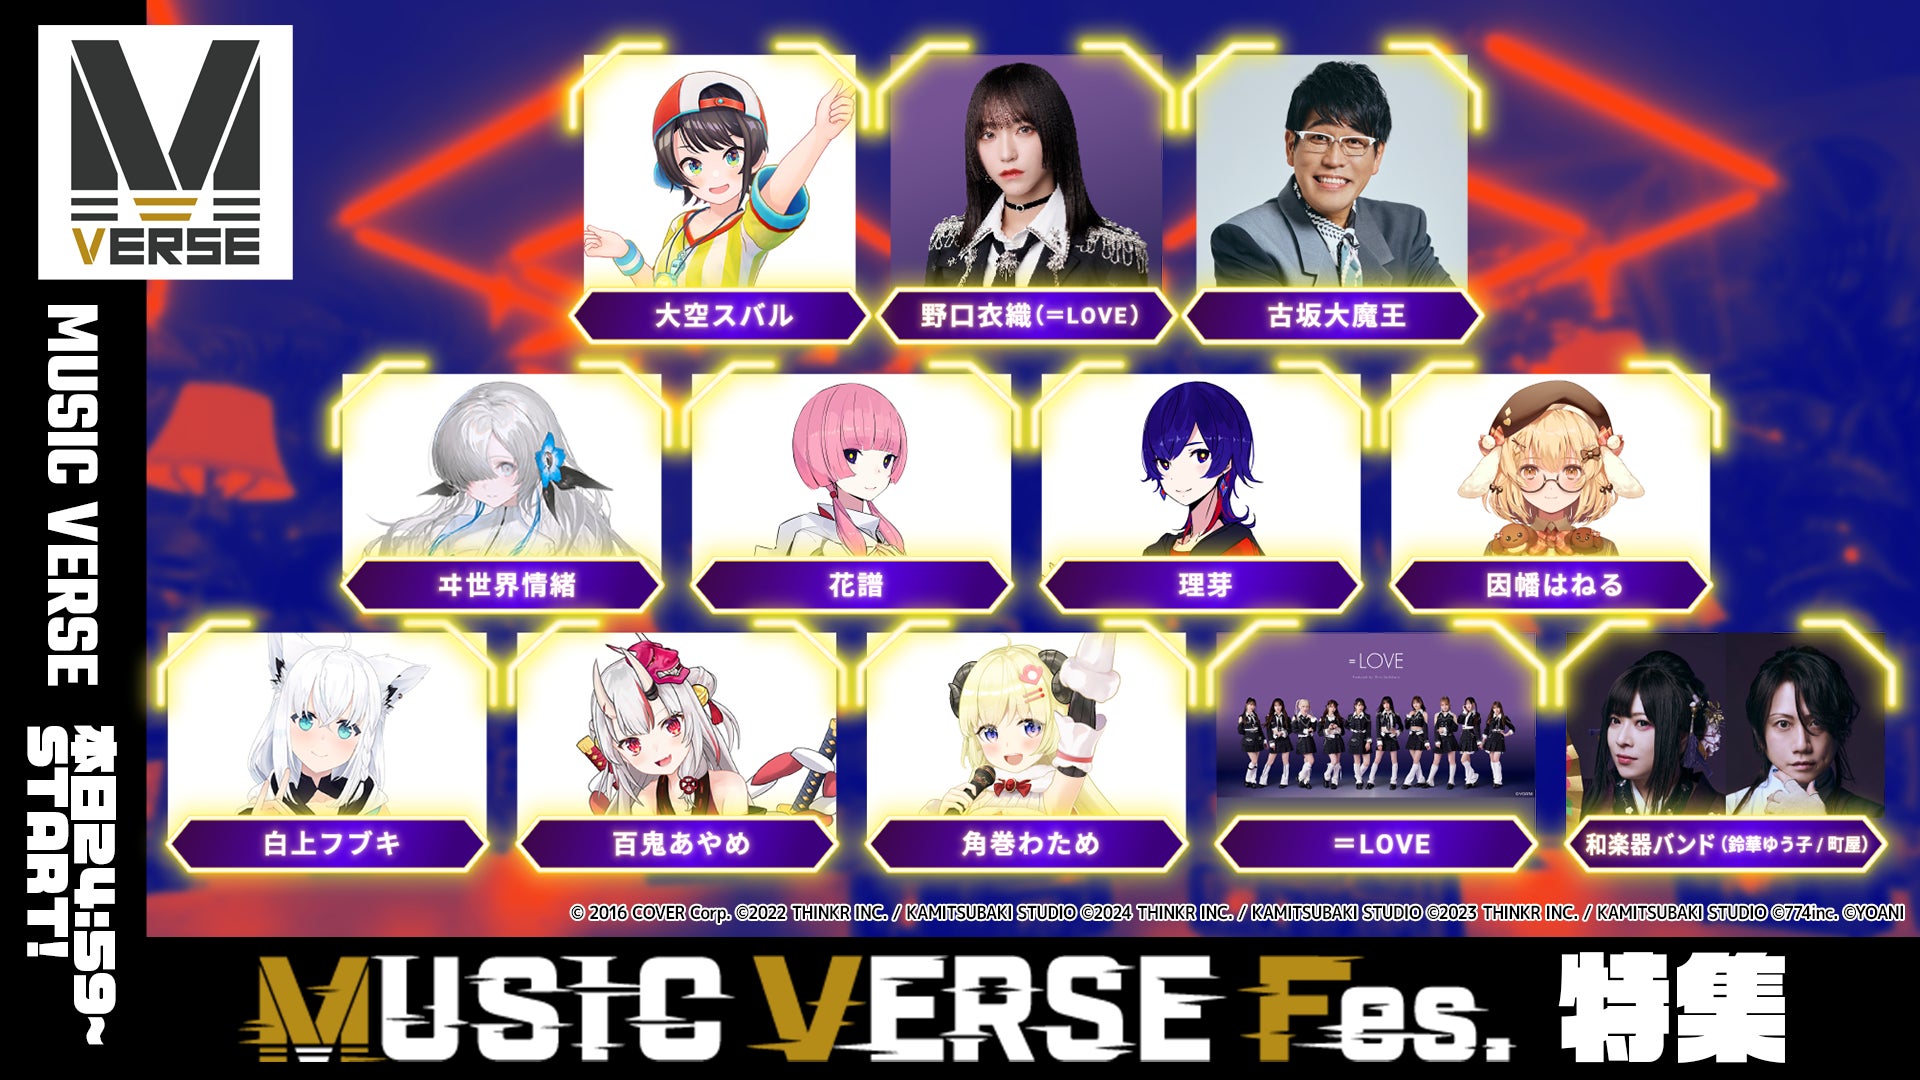 メタバース空間での地上波音楽番組「MUSIC VERSE #15」が日本テレビで6/27（木）24:59より放送！